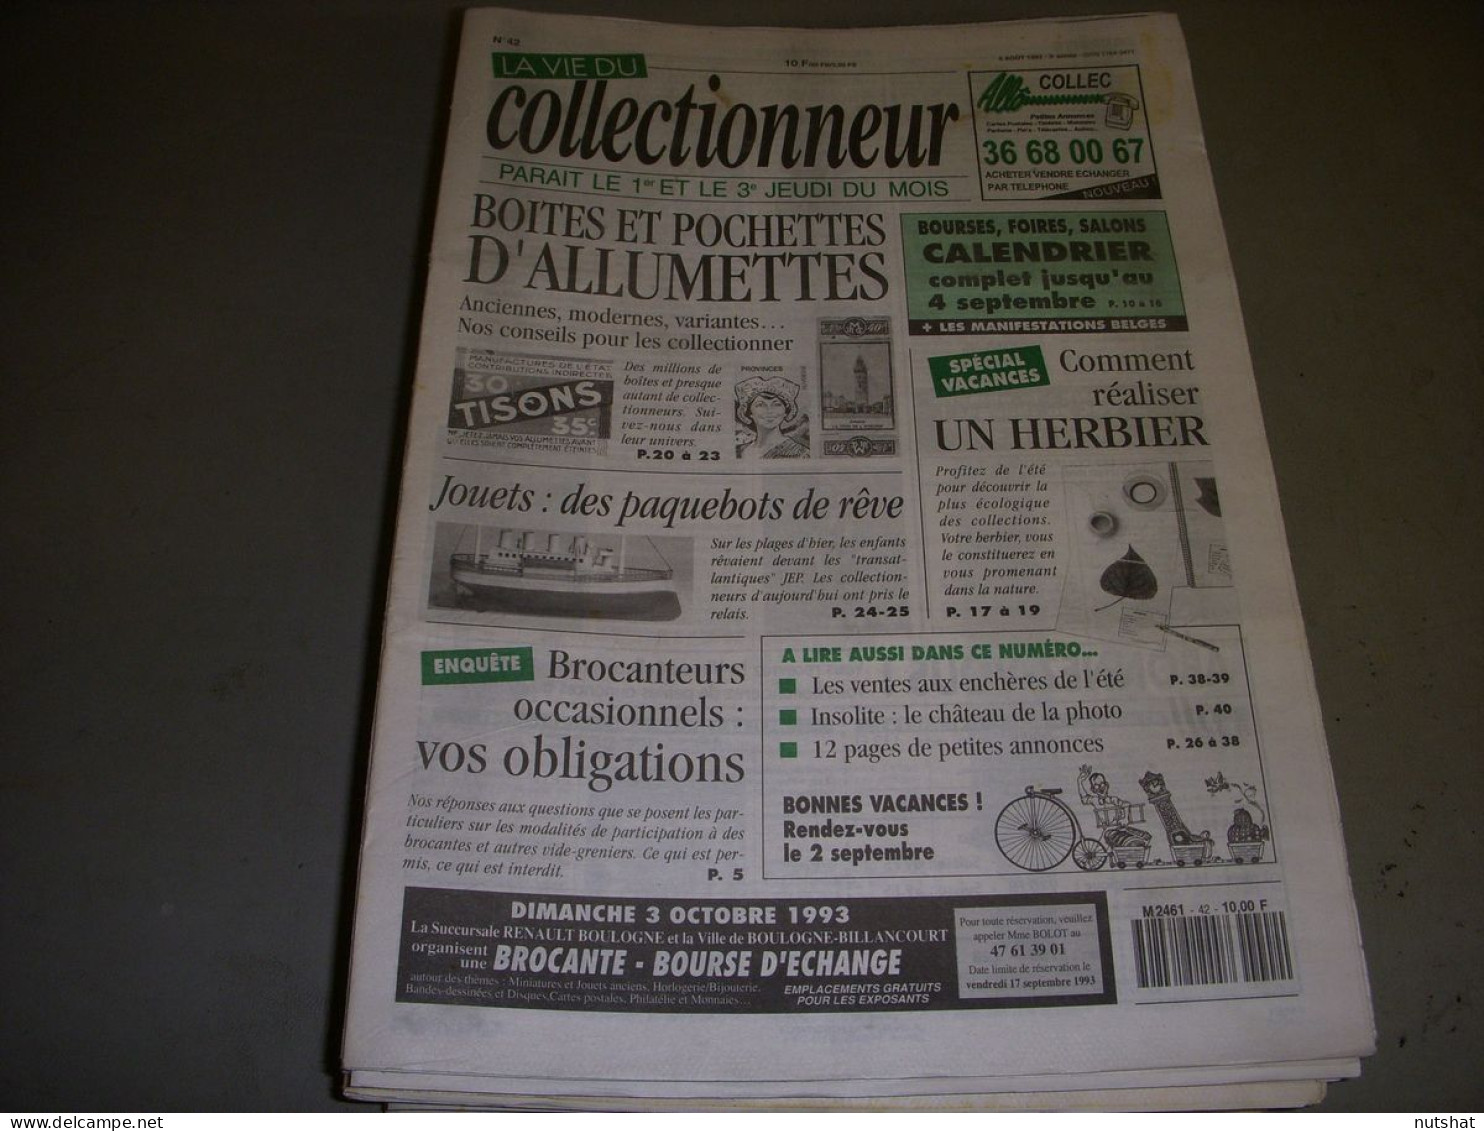 LVC VIE Du COLLECTIONNEUR 042 05.08.1993 BOITE ALLUMETTE PAQUEBOT HERBIER  - Brocantes & Collections